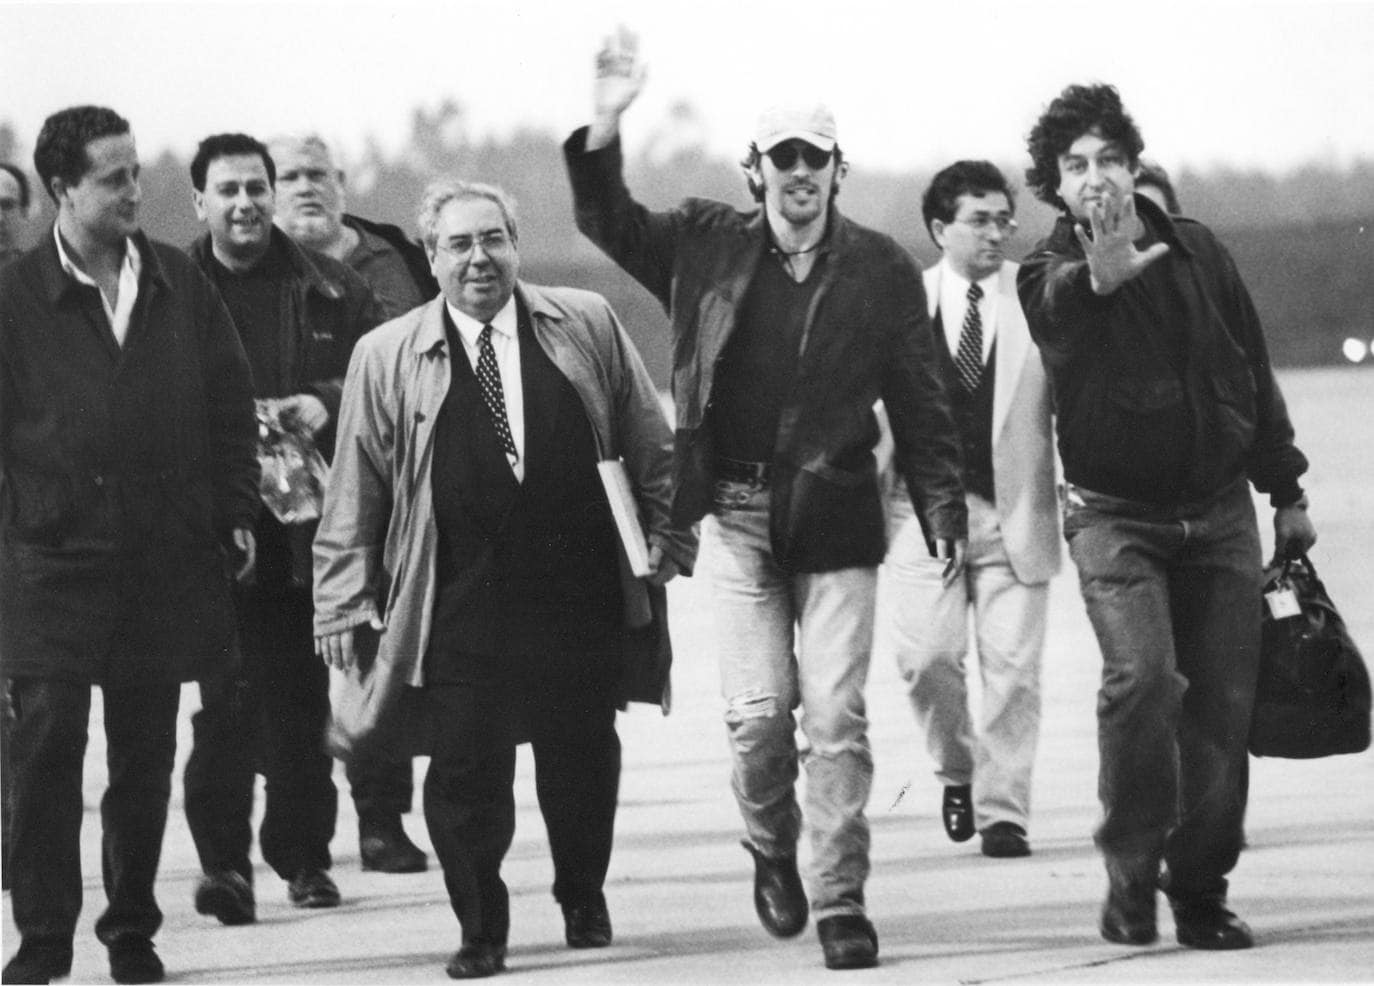 Bruce Springsteen acompañado del exalcalde de Gijón, Vicente Álvarez Areces, en la pista del aeropuerto de Asturias la víspera del concierto en El Molinón en 1993